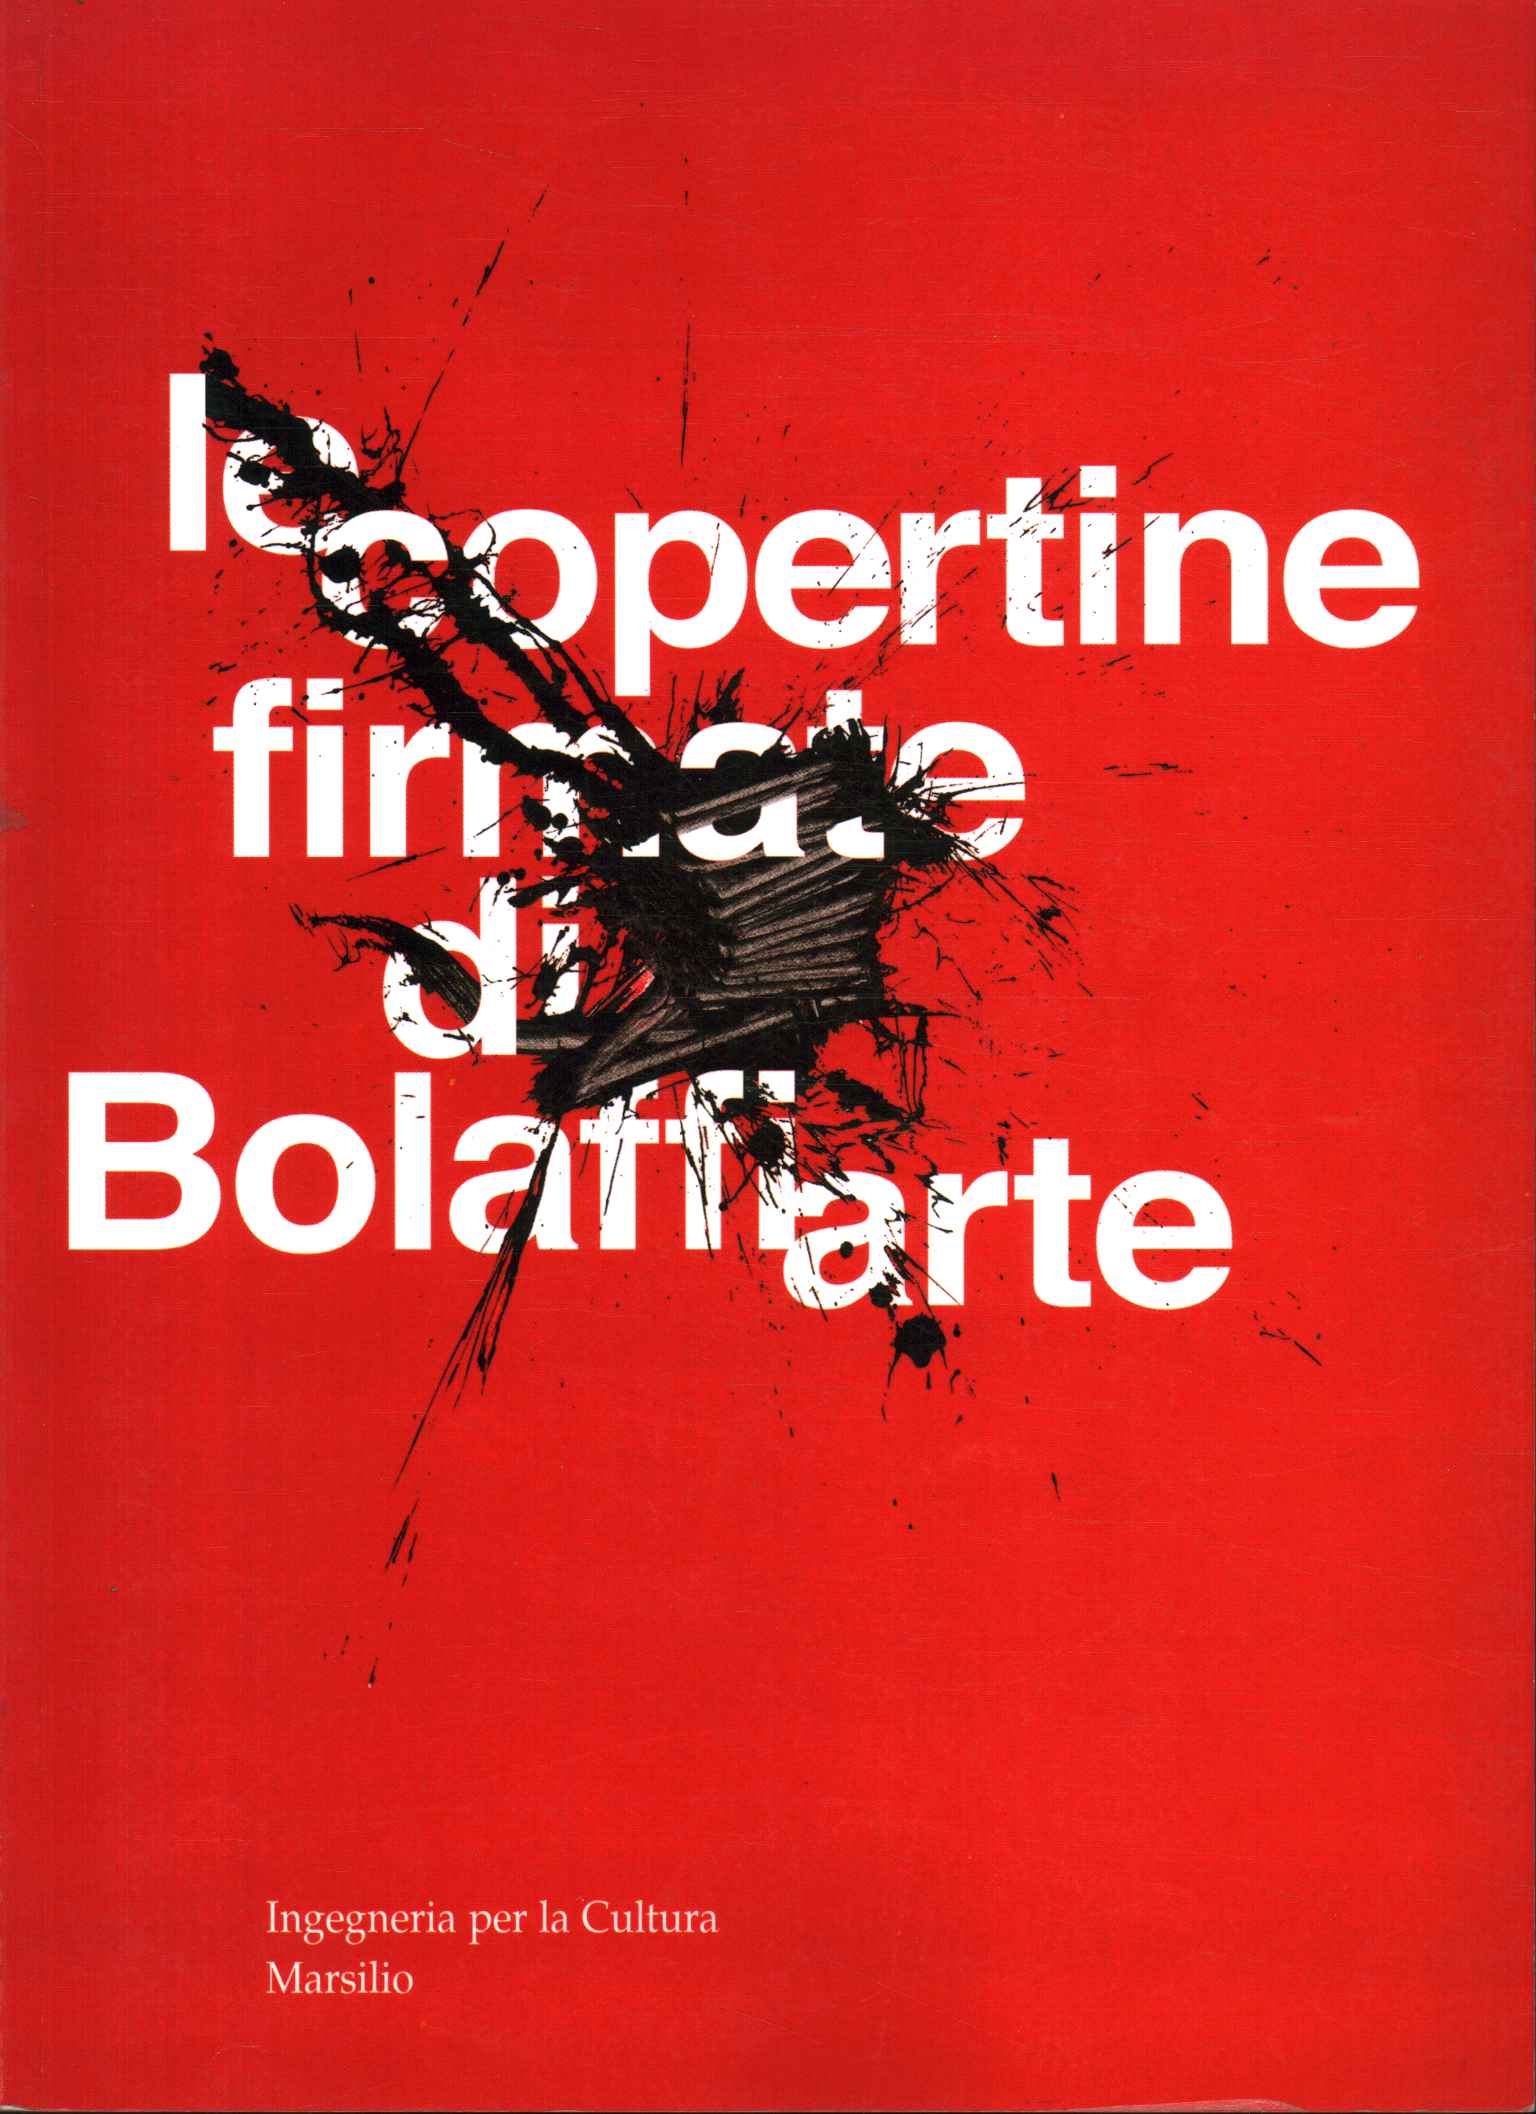 Bolaffiartes signierte Cover